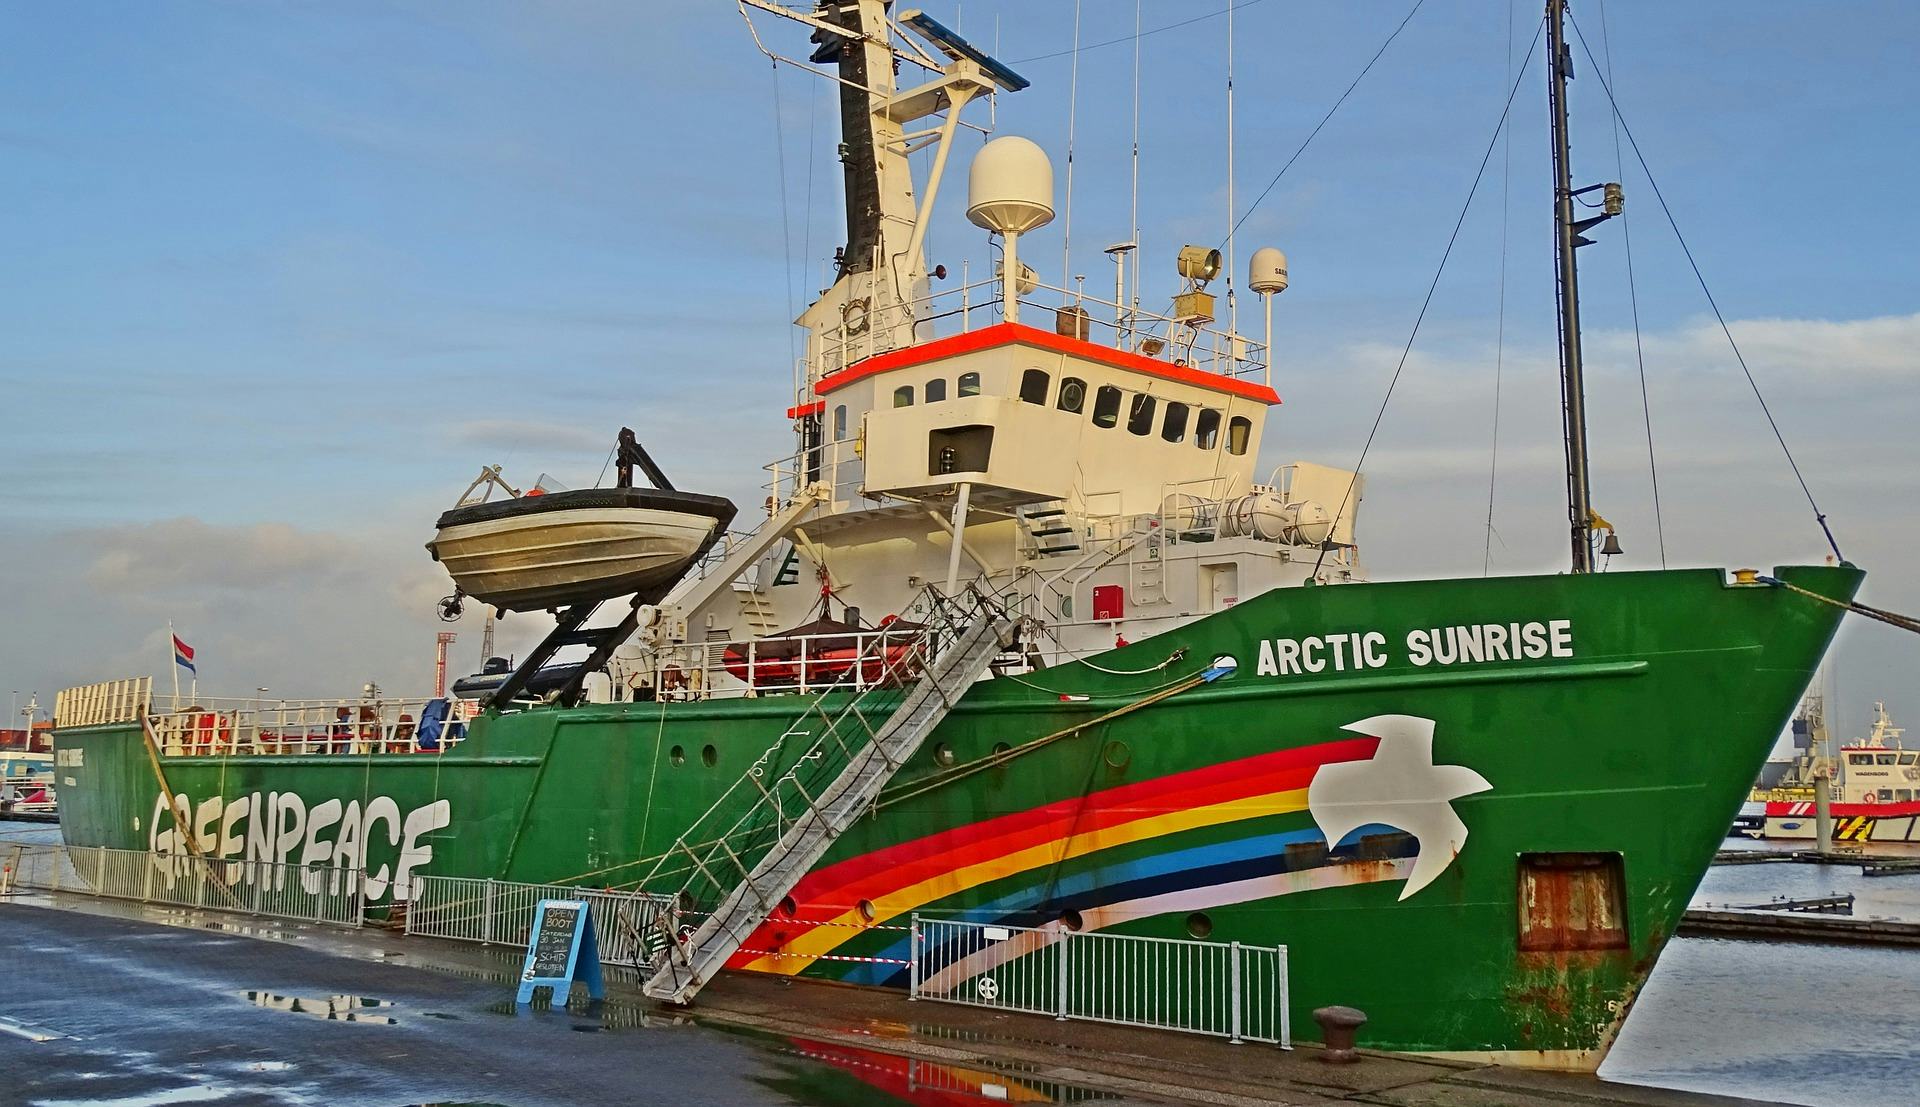 Greenpeace hoeft niet over naar pensioenfonds Koopvaardij, Arctic Sunrise is pleziervaartuig